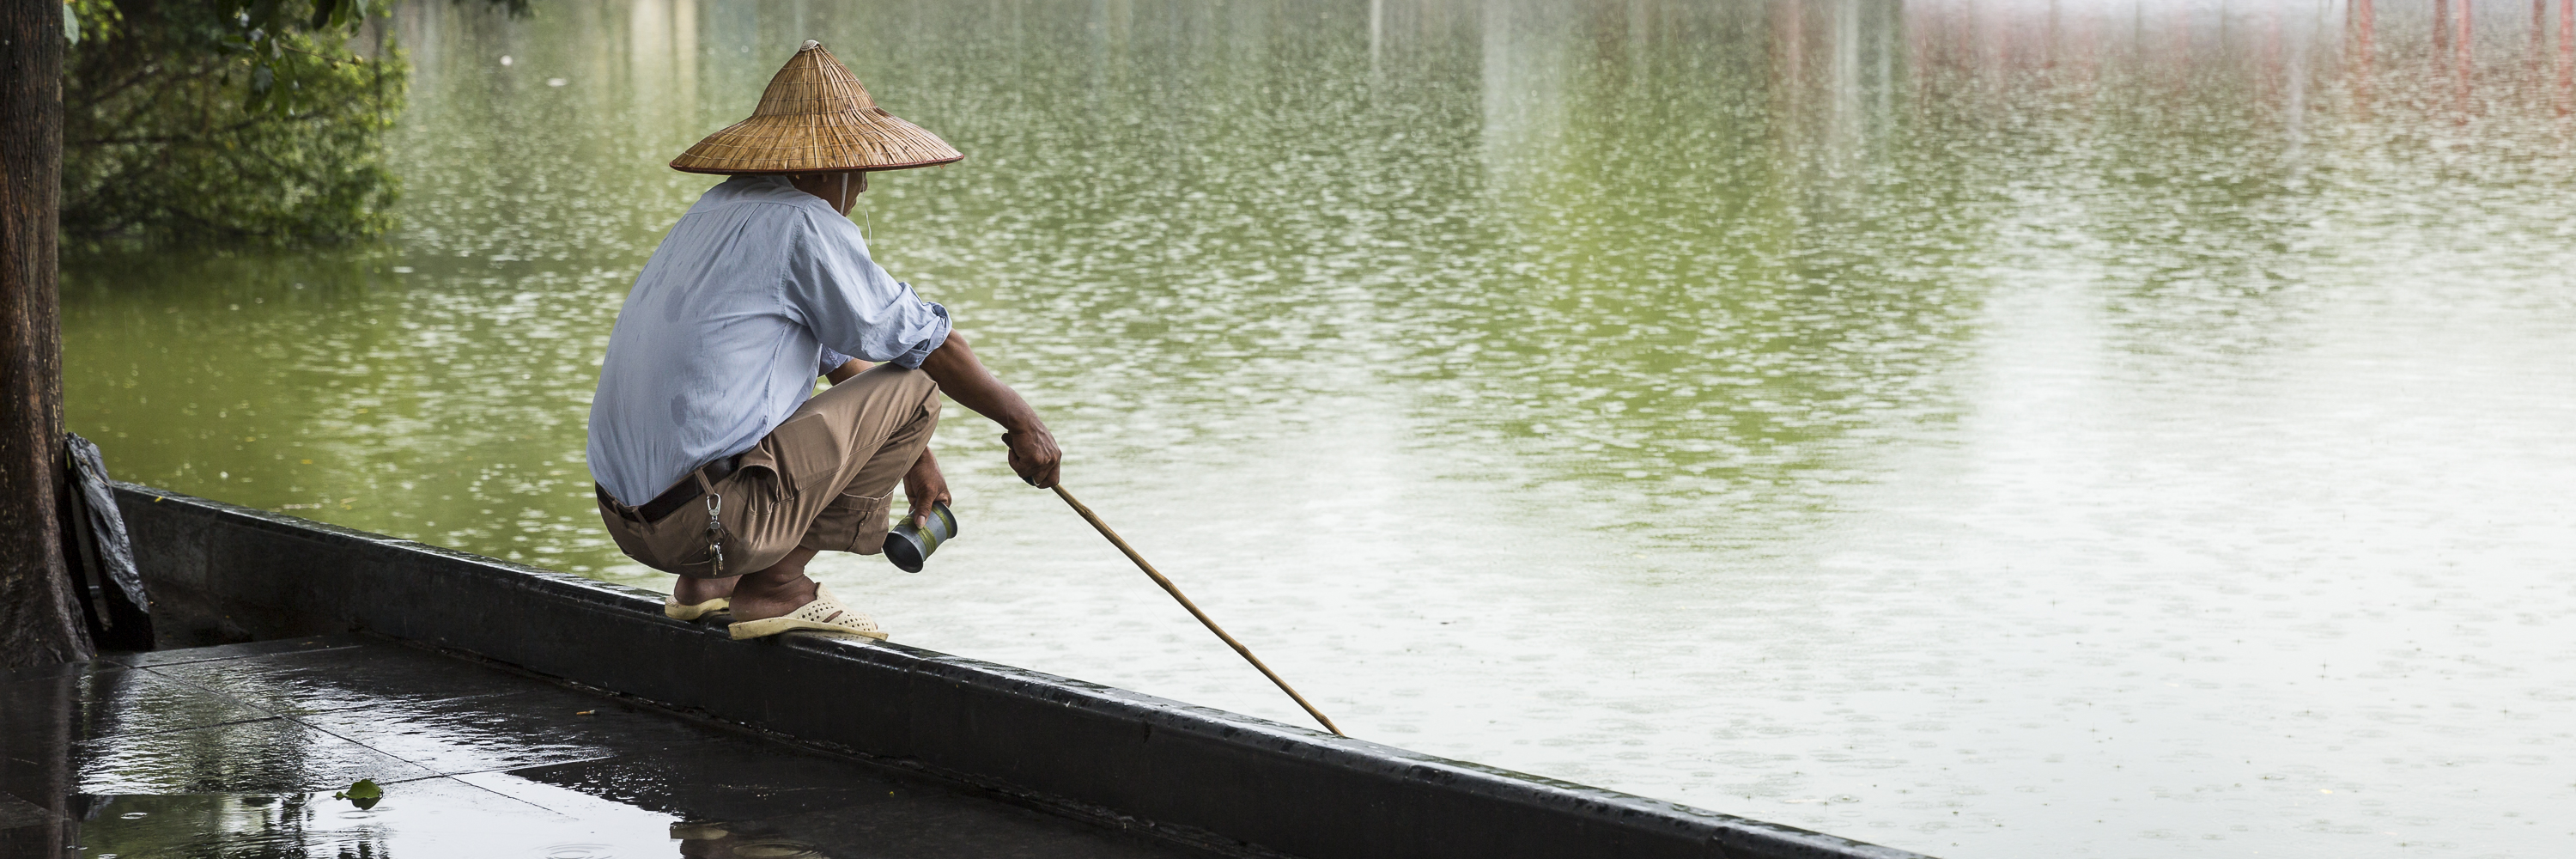 Man Fishing. Photo: Neil Featherstone